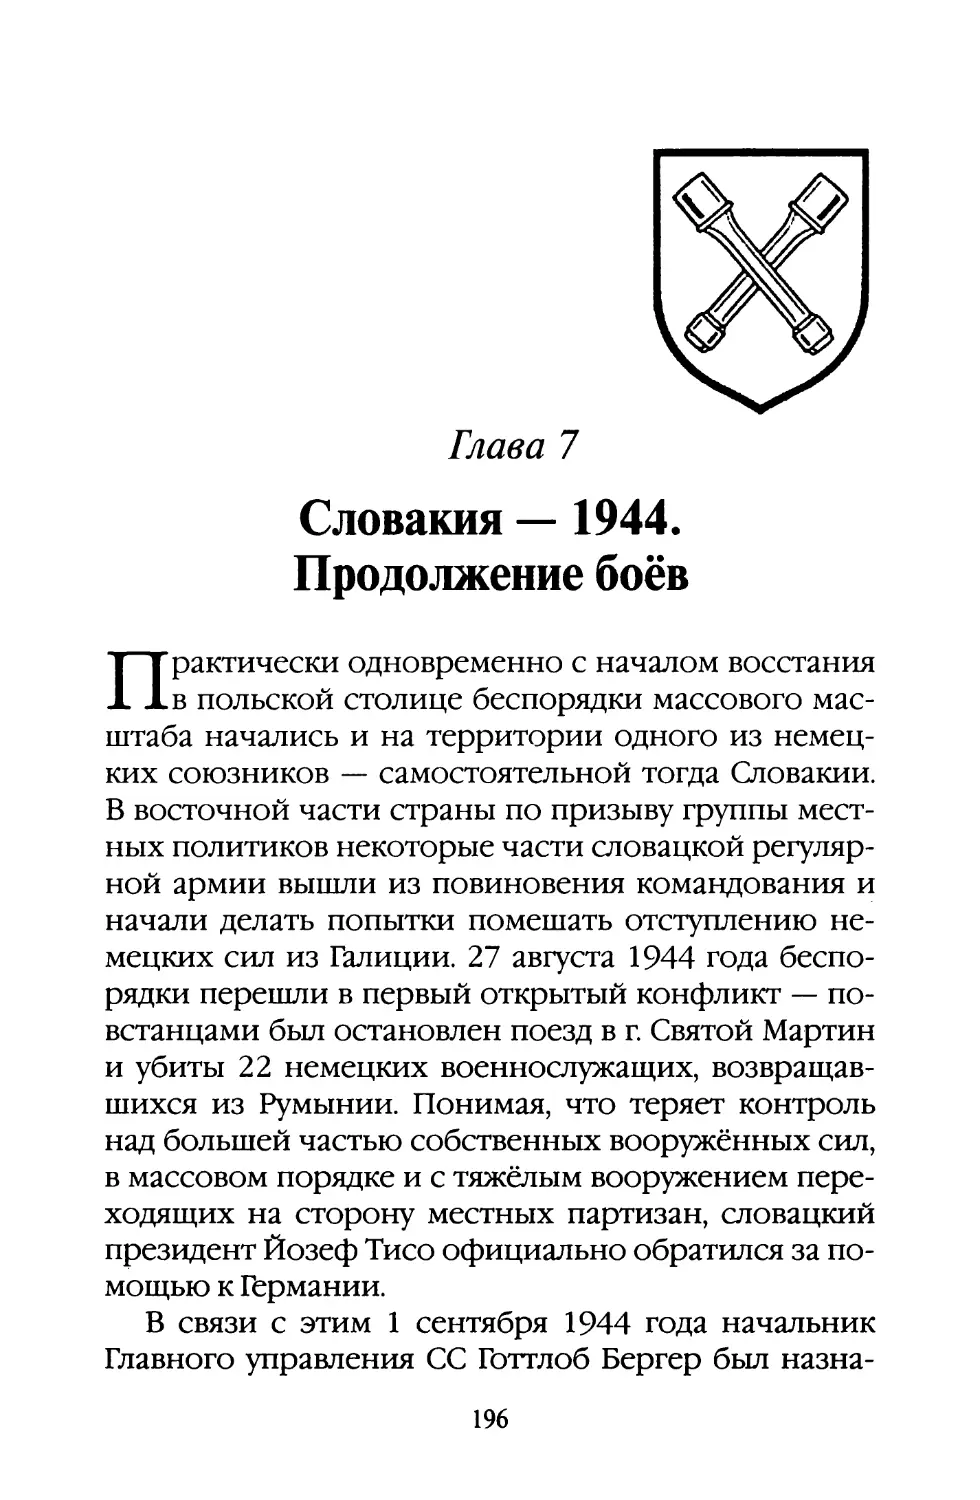 Глава 7. Словакия — 1944. Продолжение боёв